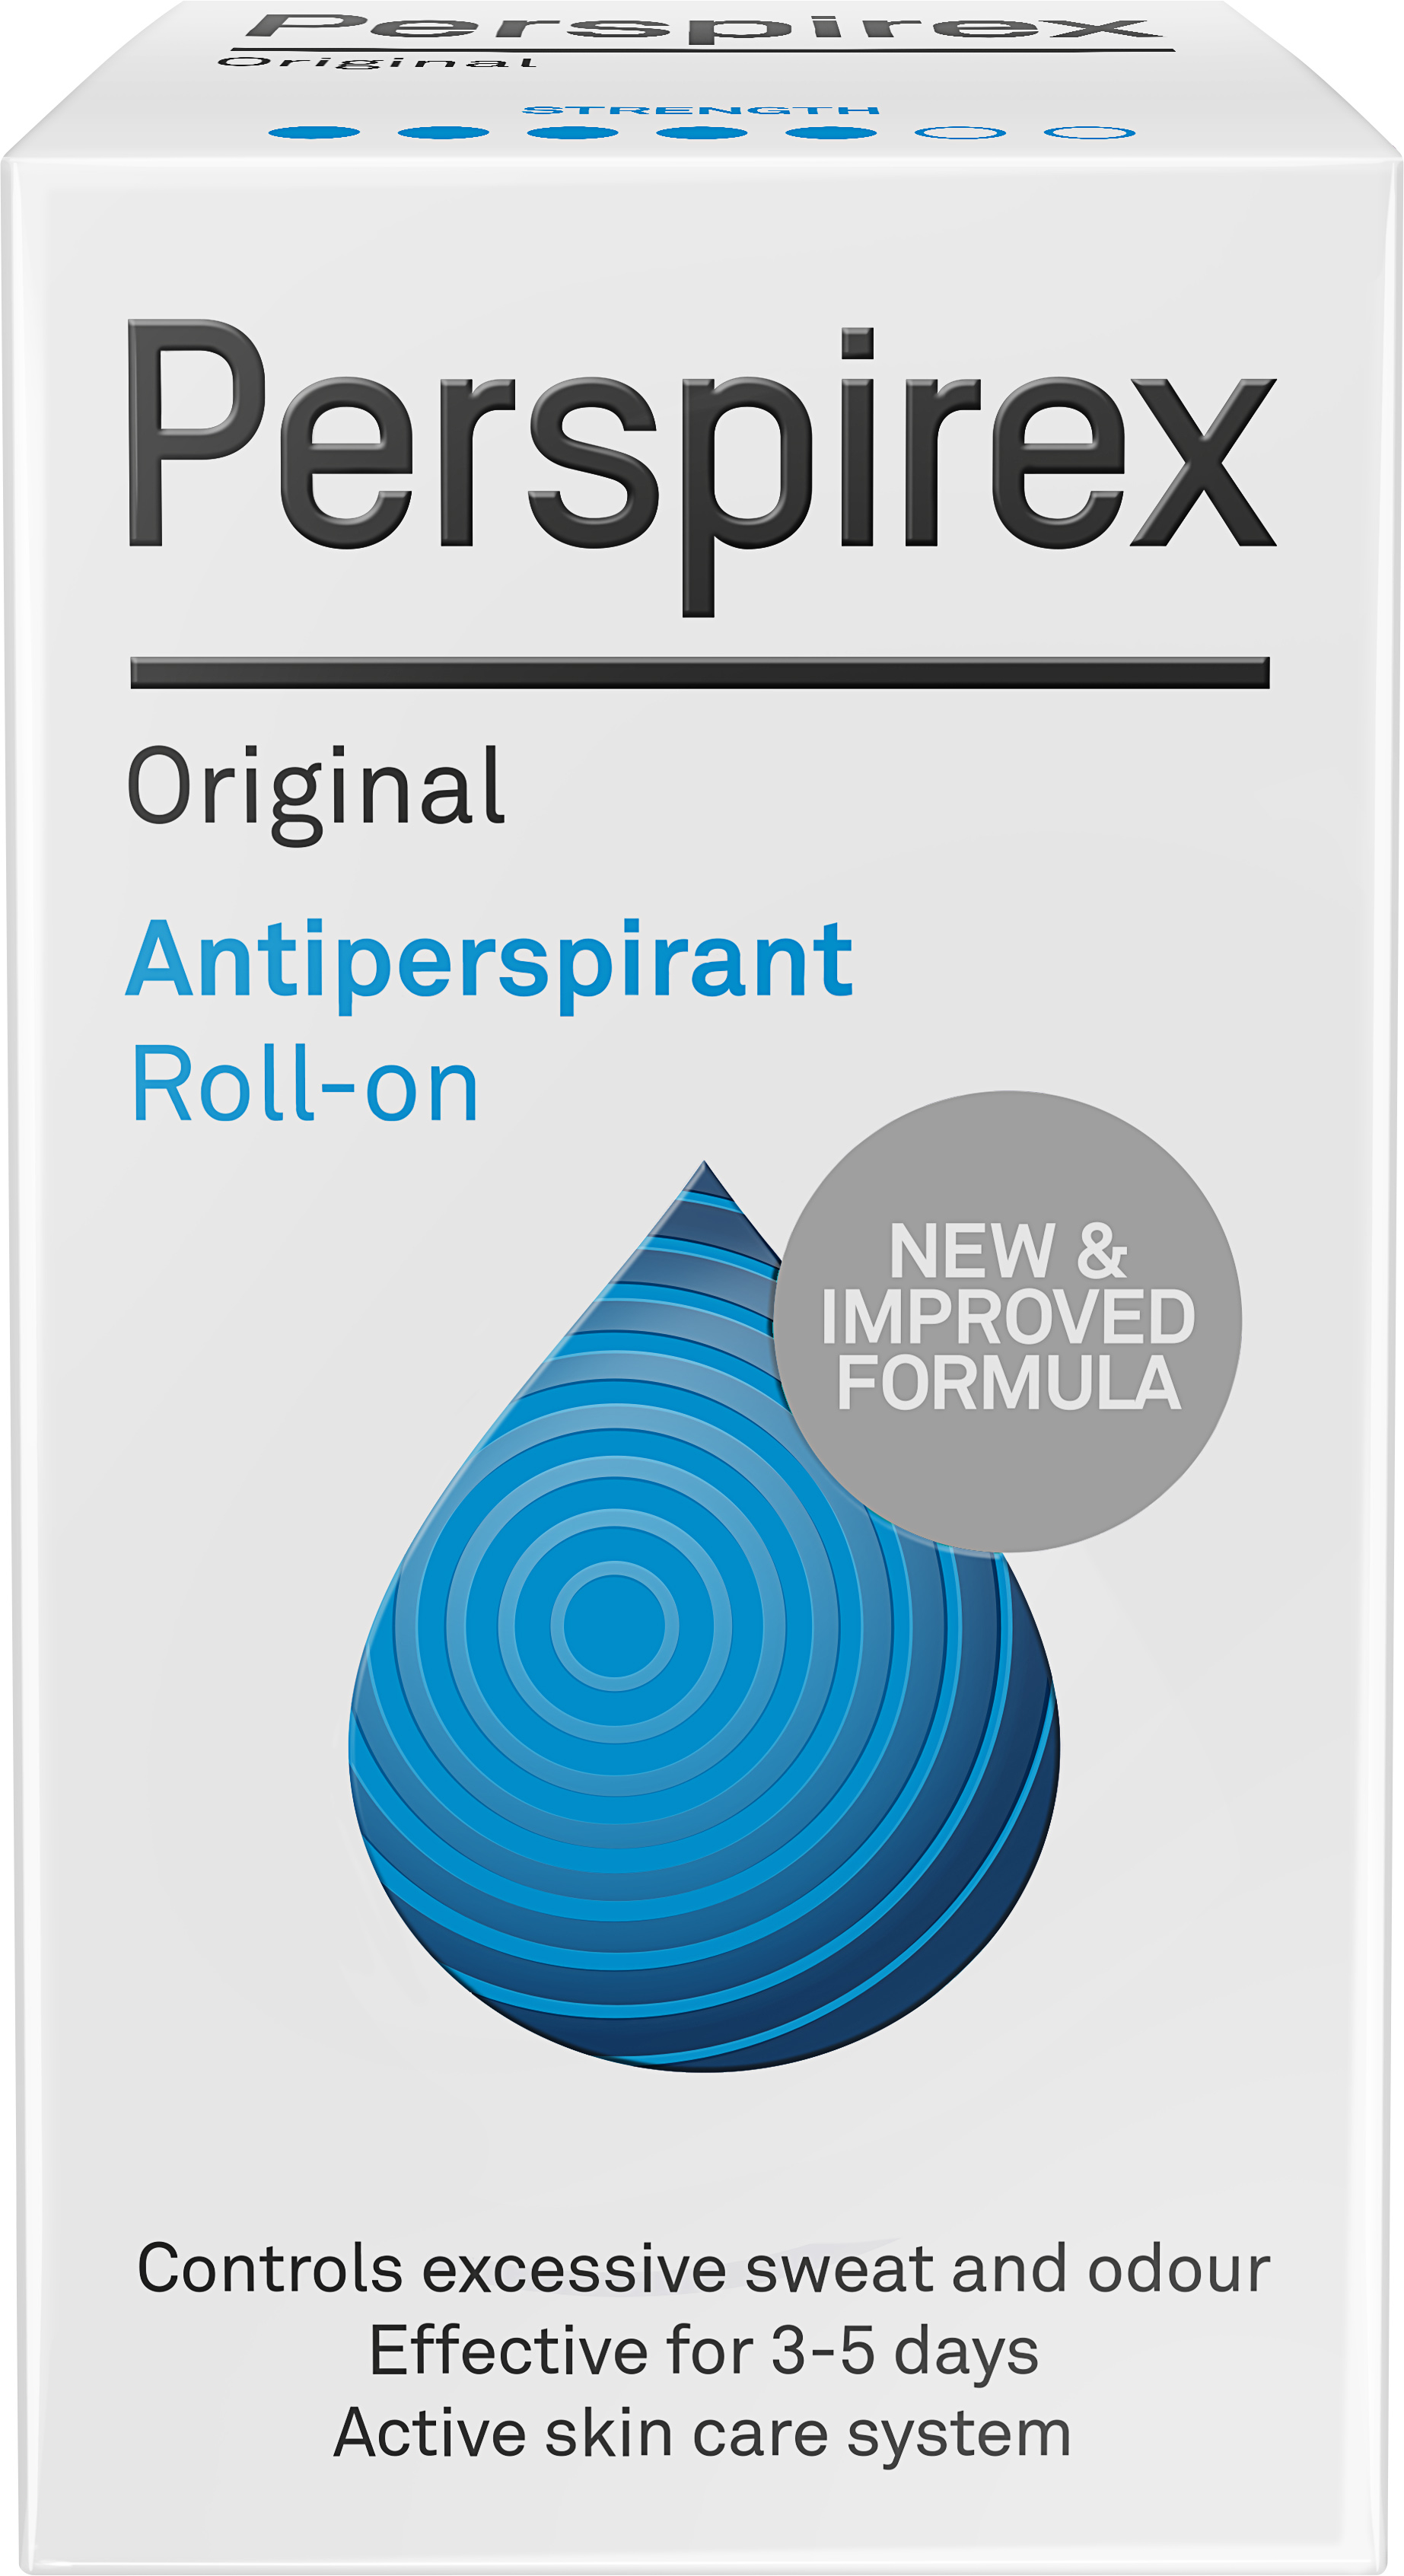 Perspirex Original roll on 20 ml